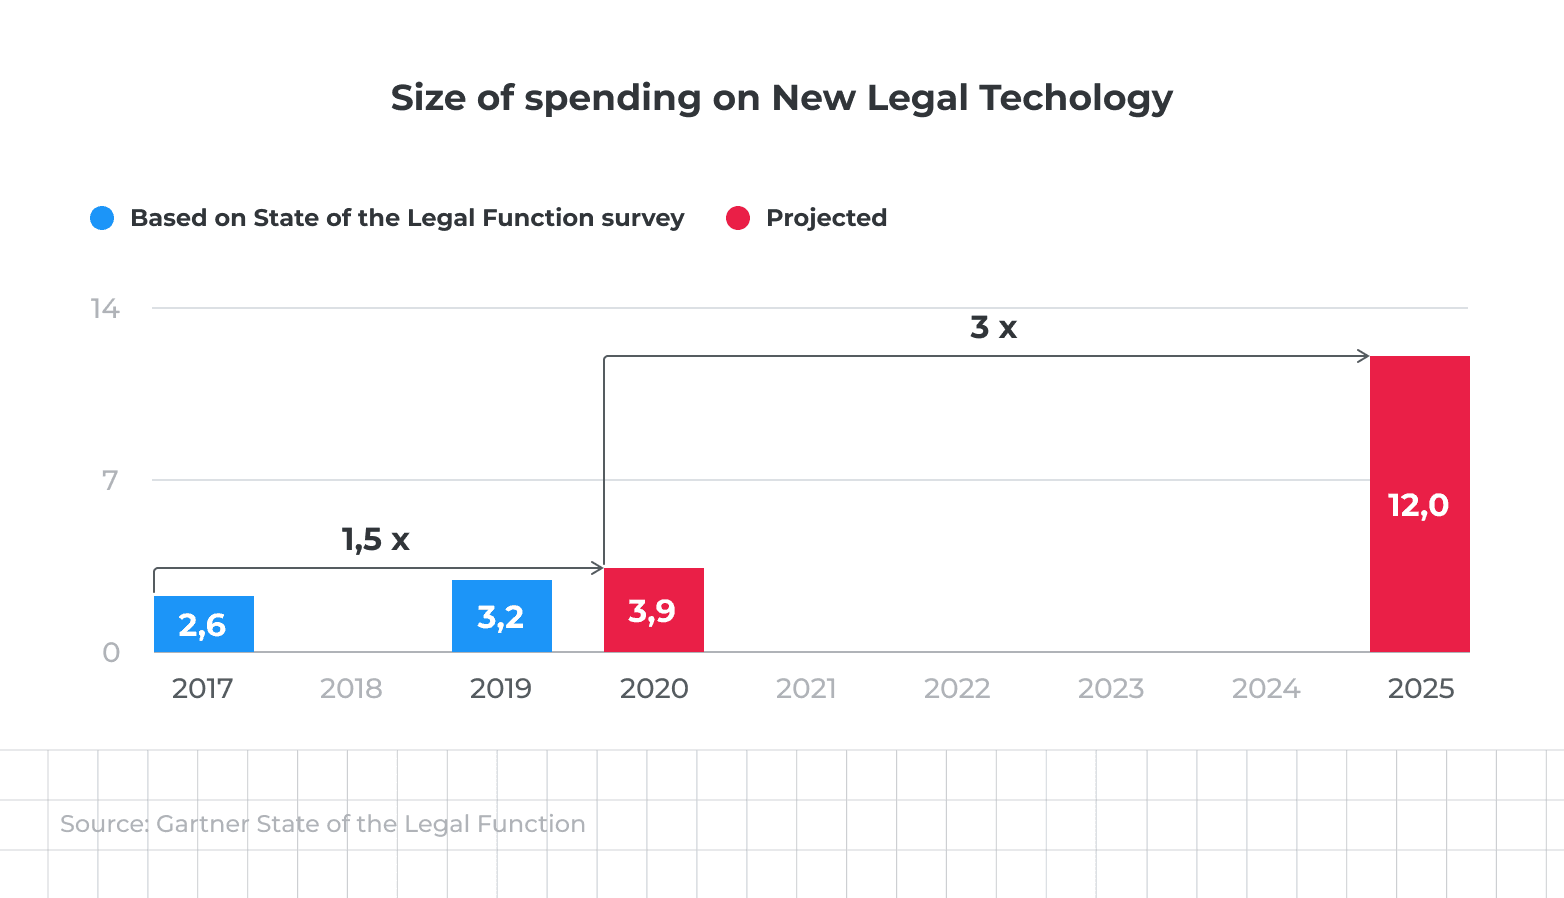 LegalTech Market Size